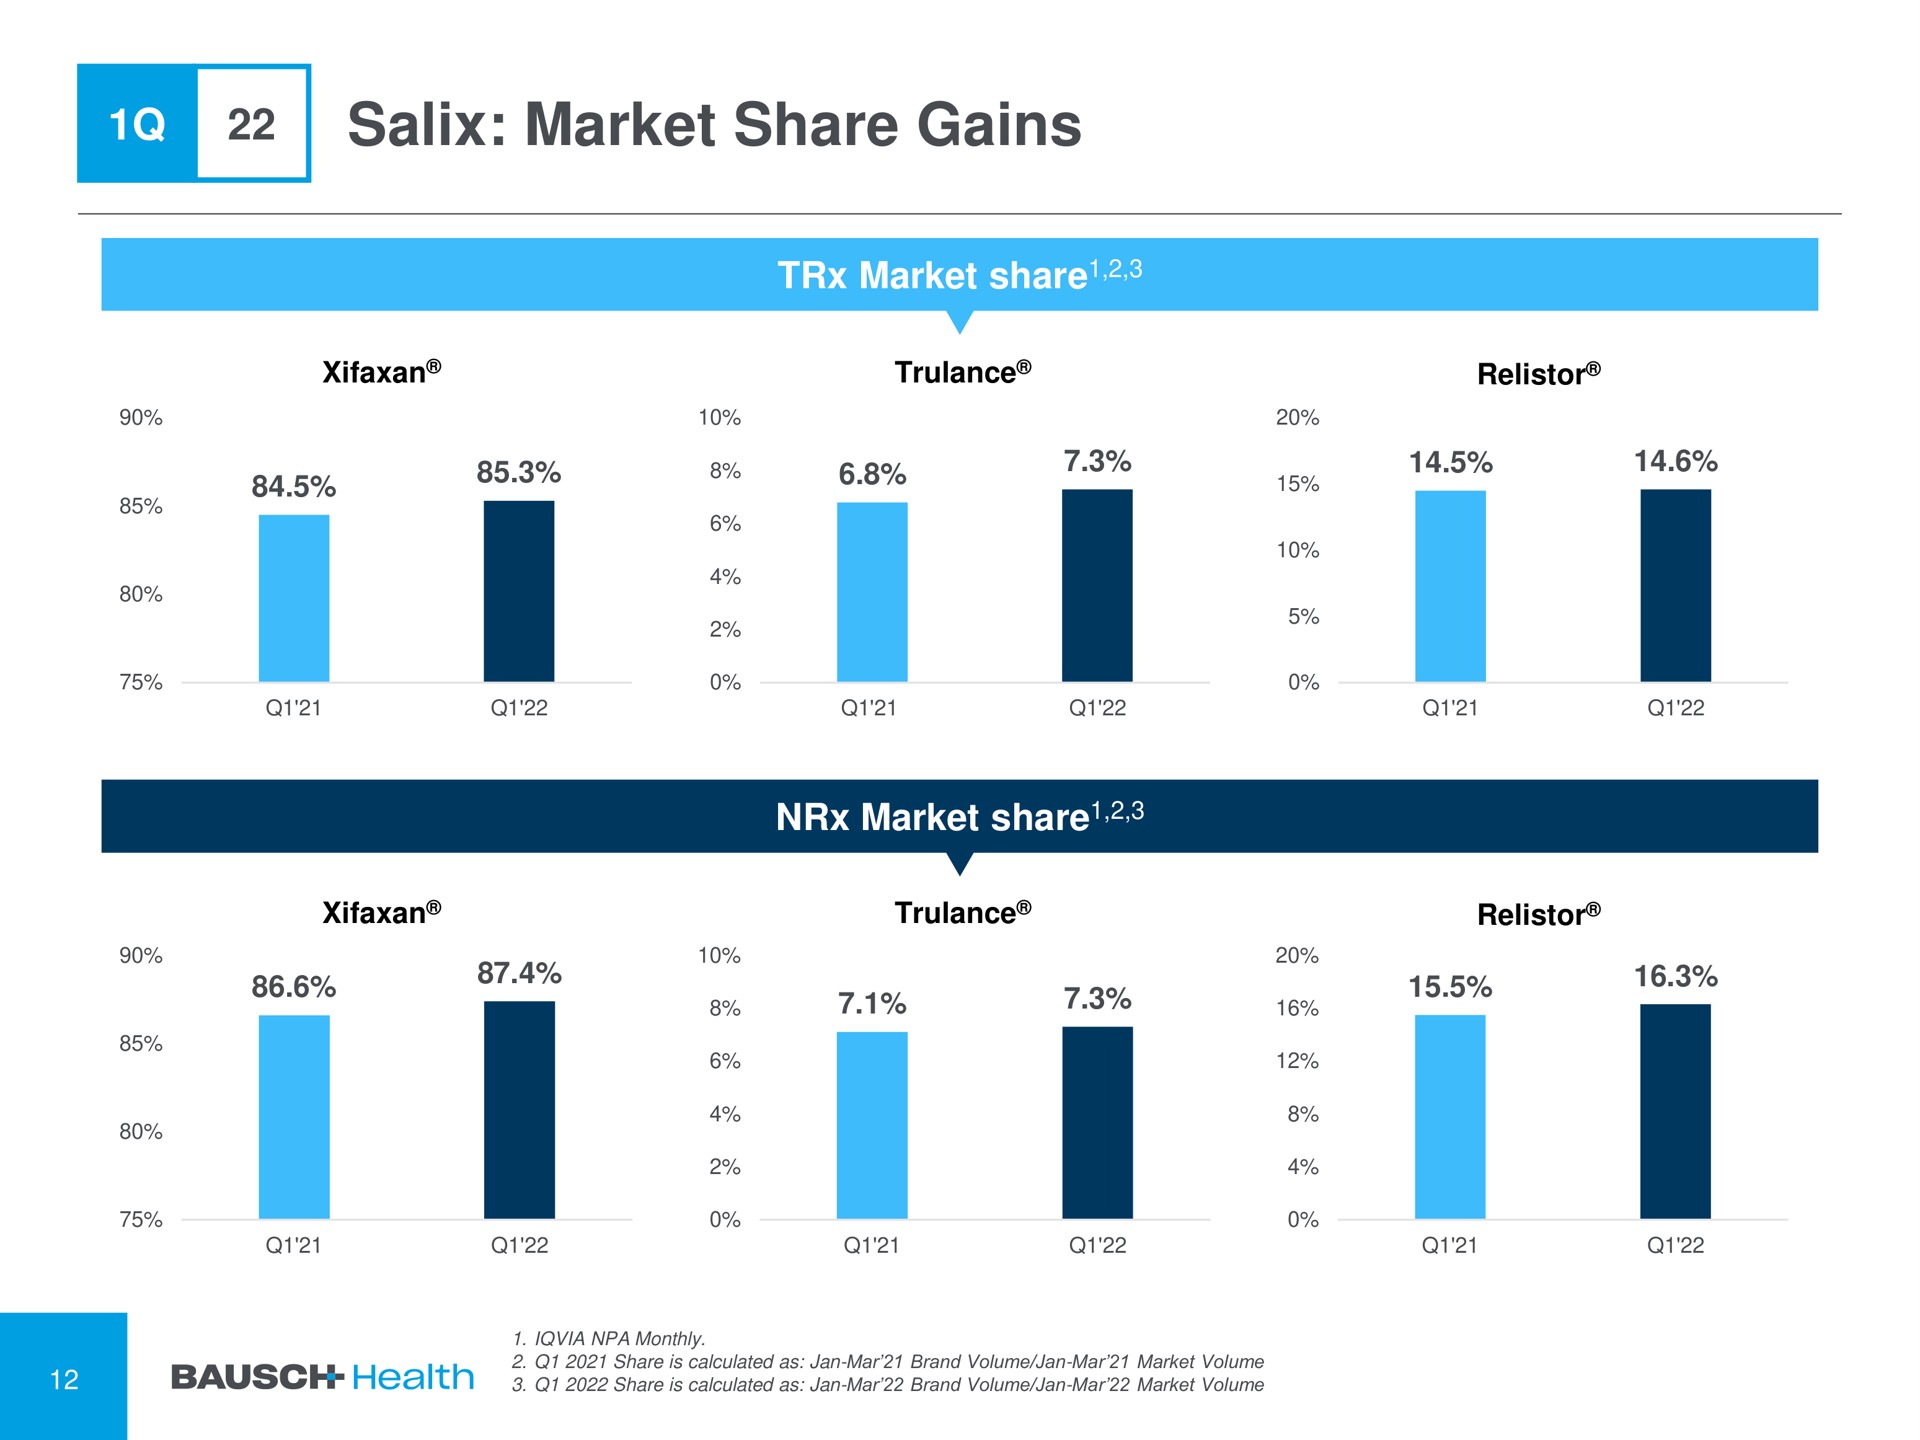 salix market share gains | Bausch Health Companies